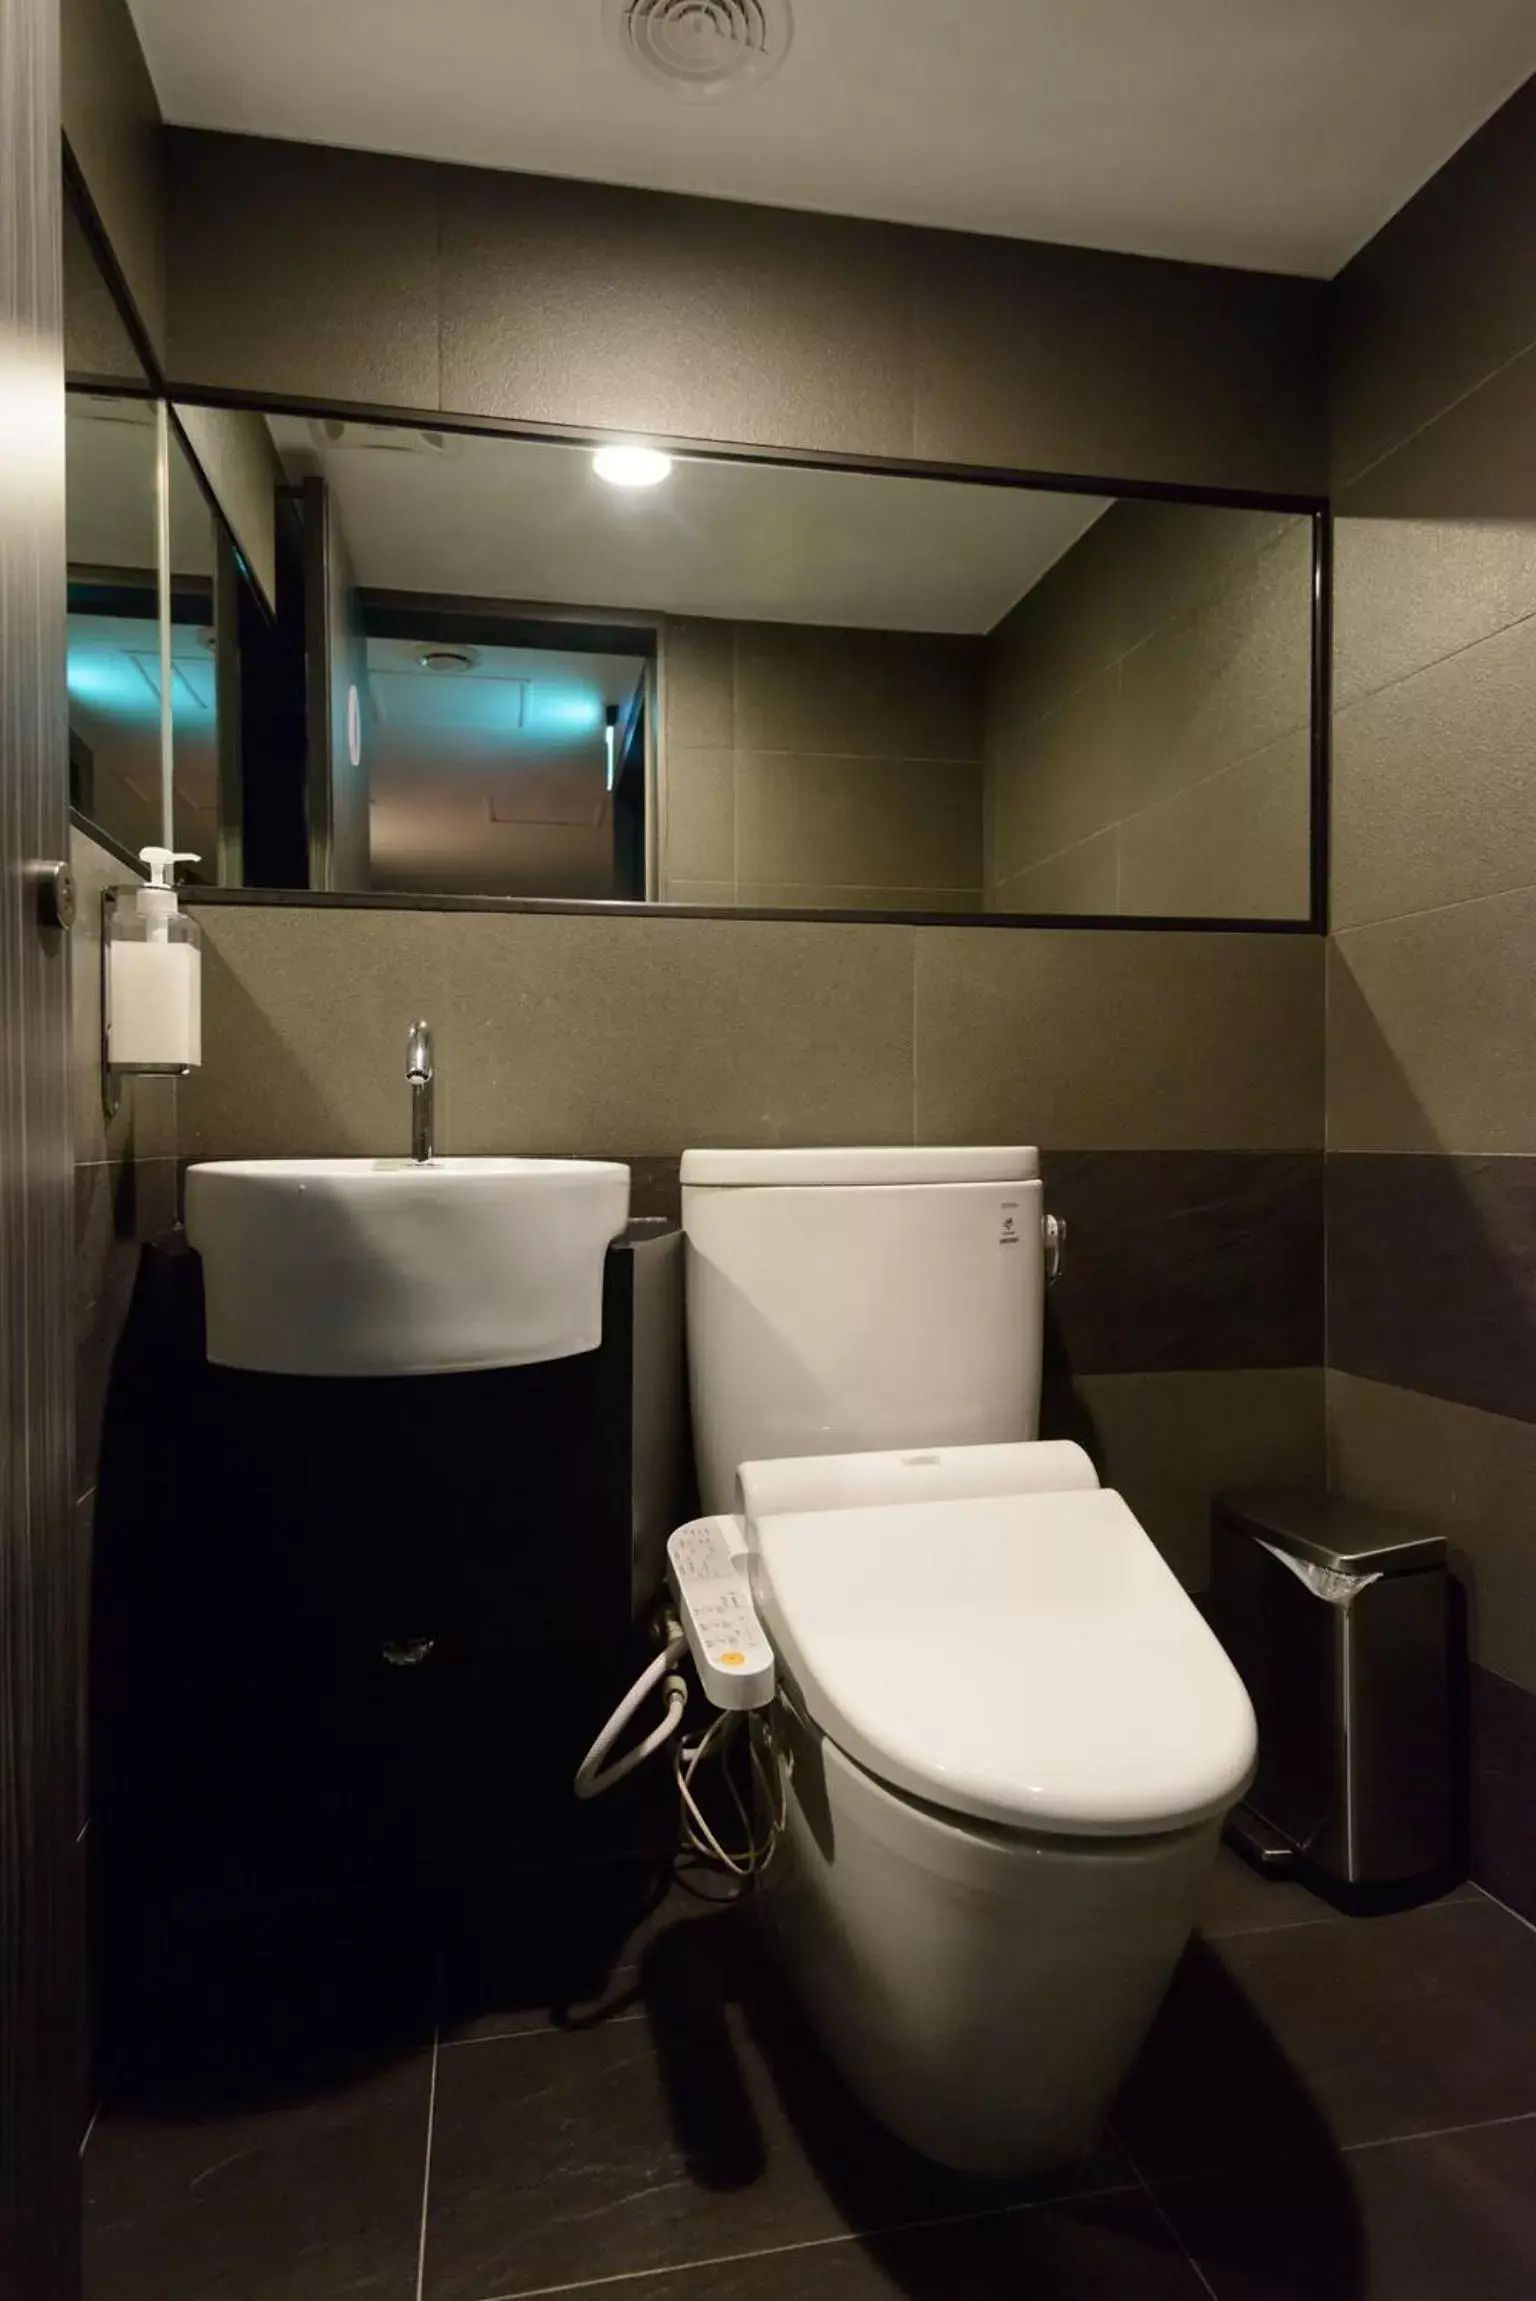 Toilet, Bathroom in Poshpacker Hotel